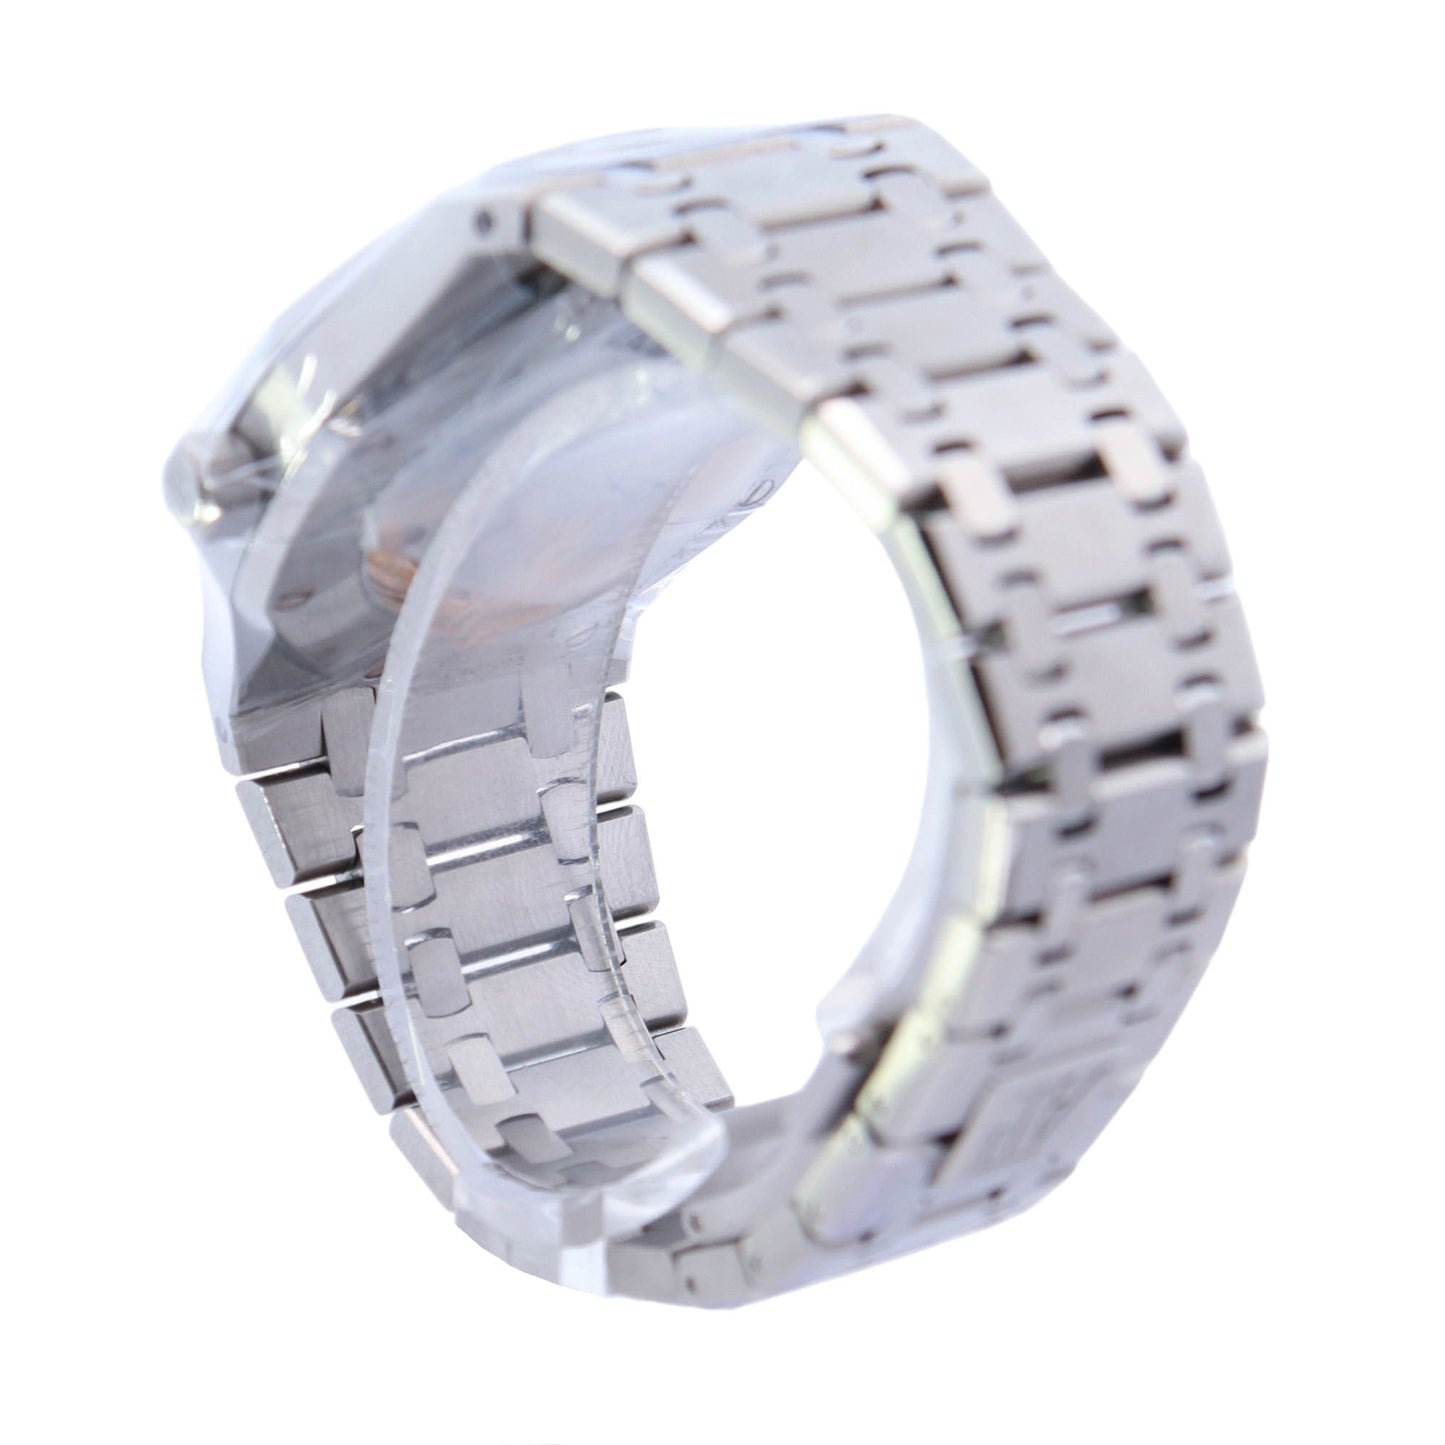 Audemars Piguet Royal Oak 39mm Stainless Steel Skeleton Dial Watch Ref# 15305ST.OO.1220ST.01 - Happy Jewelers Fine Jewelry Lifetime Warranty